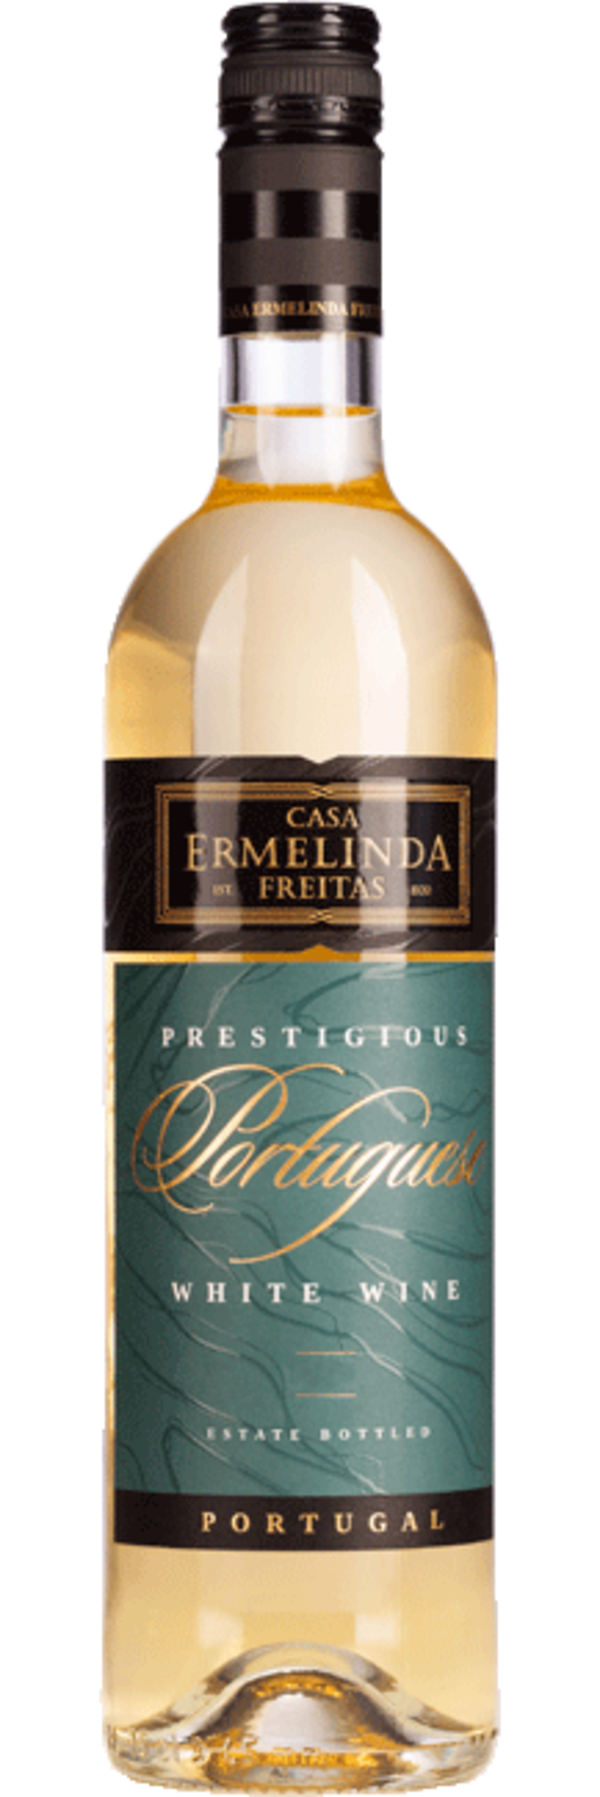 Casa Ermelinda Branco White Wine2021